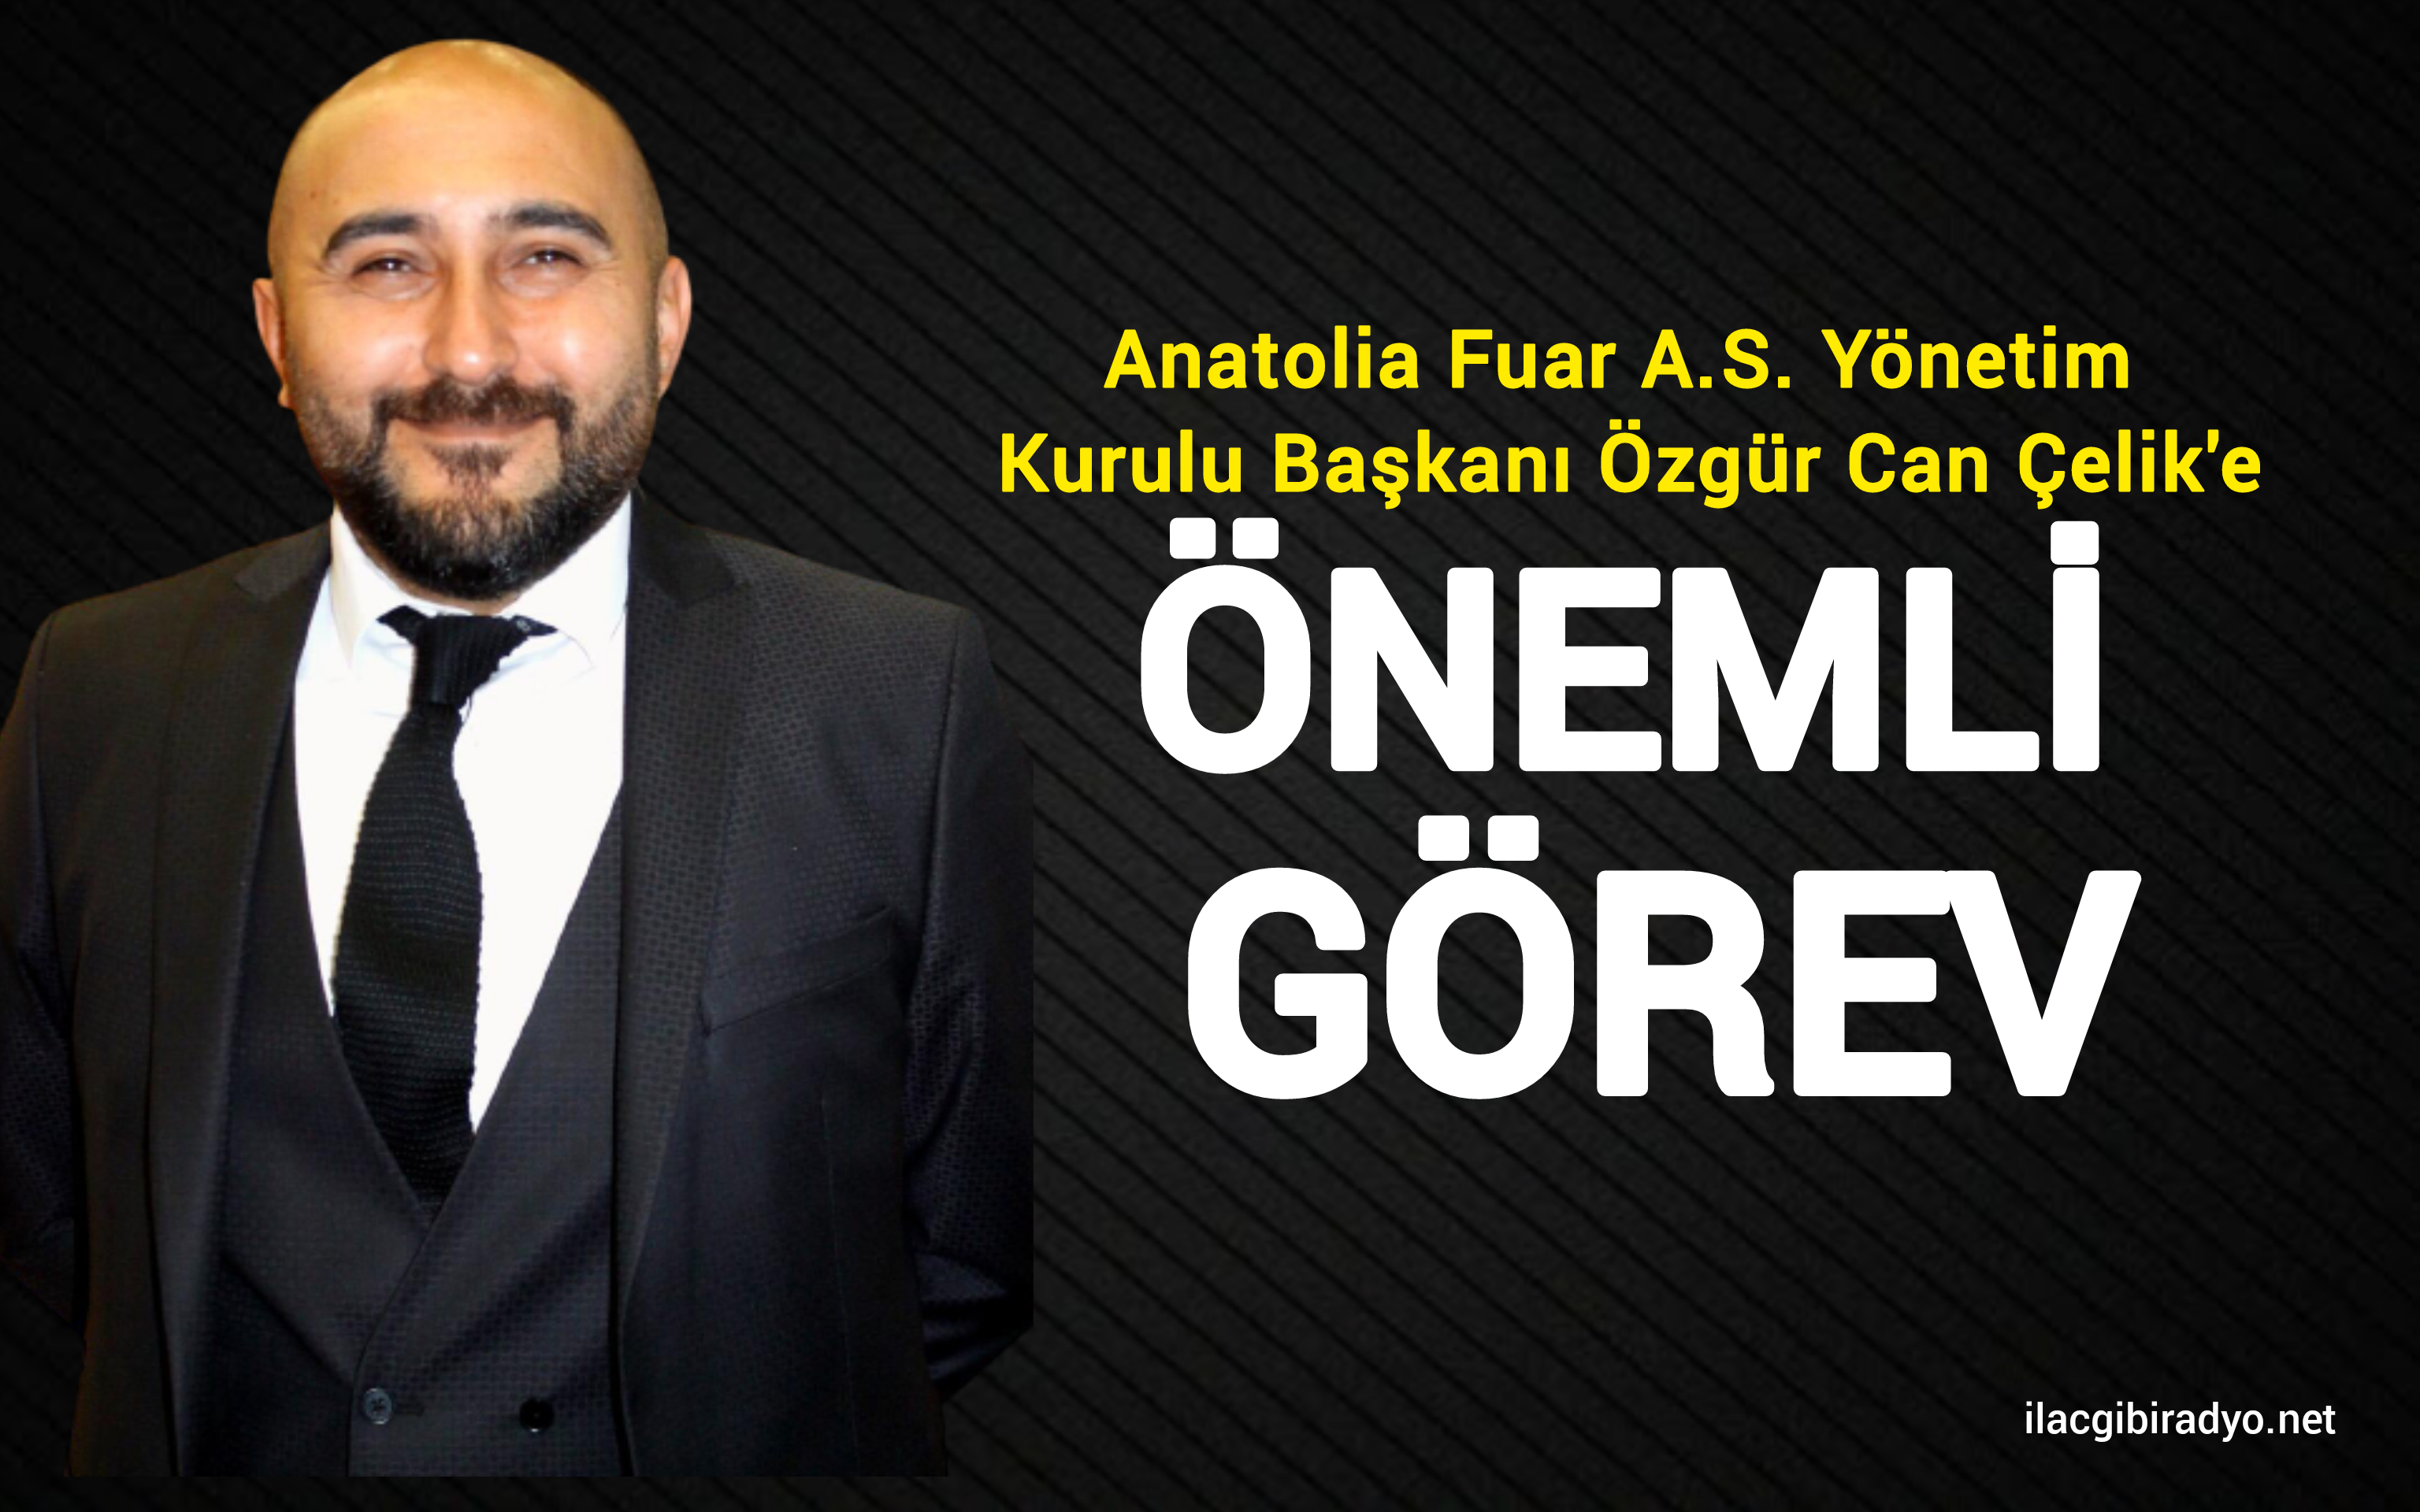 Anatolia Fuar A.Ş. Yönetim Kurulu Başkanı Özgür Can Çelik'e önemli görev